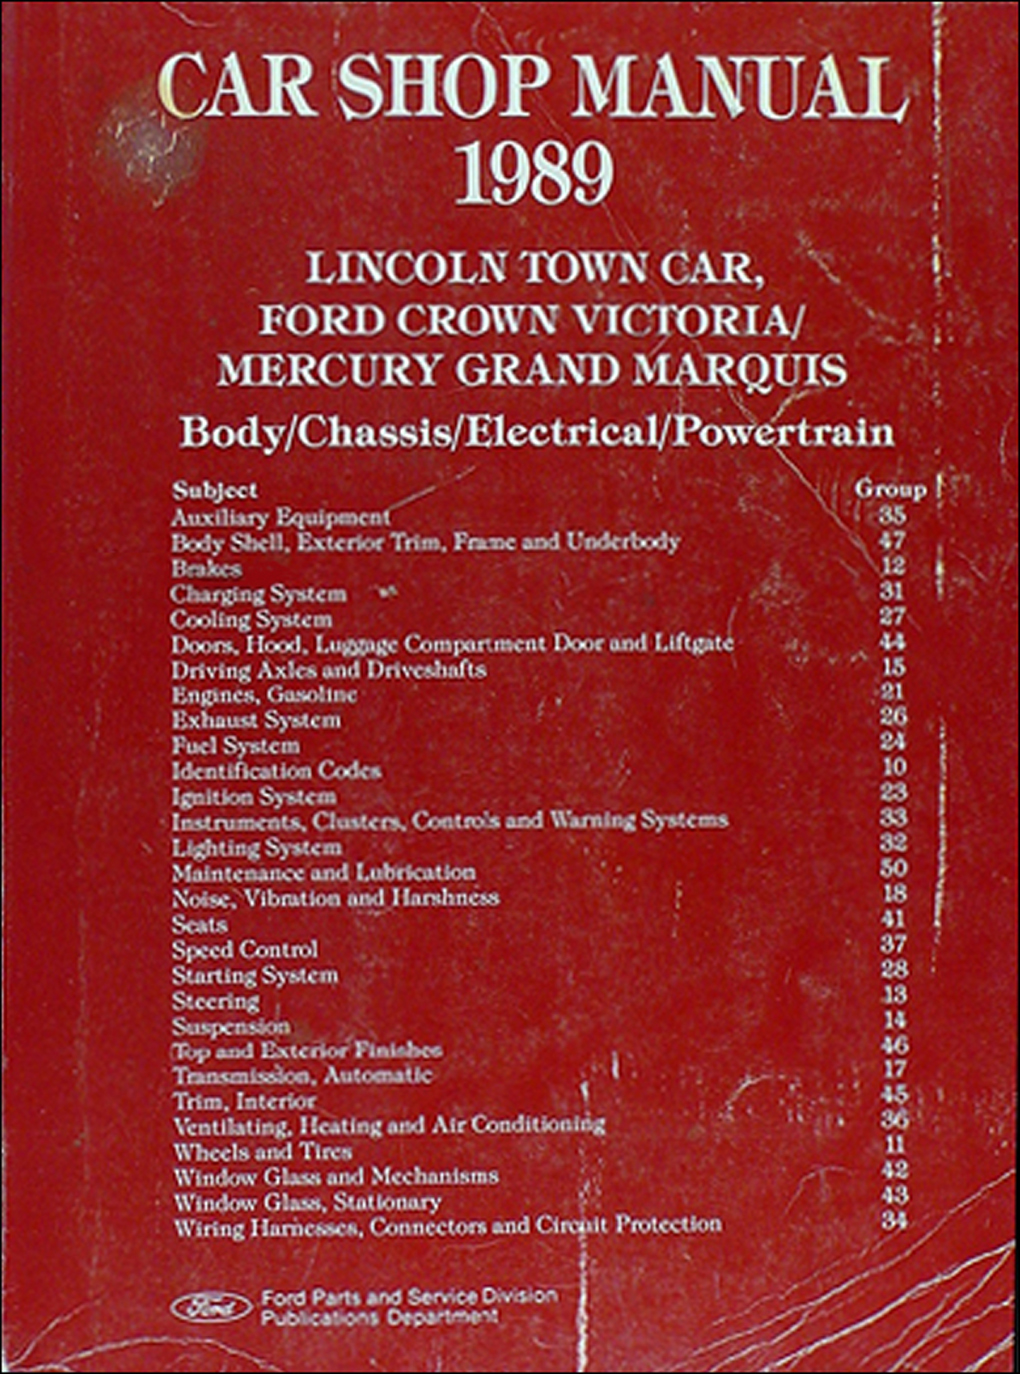 1989 Lincoln Town Car, Ford Crown Victoria, & Mercury Grand Marquis Shop Manual Original